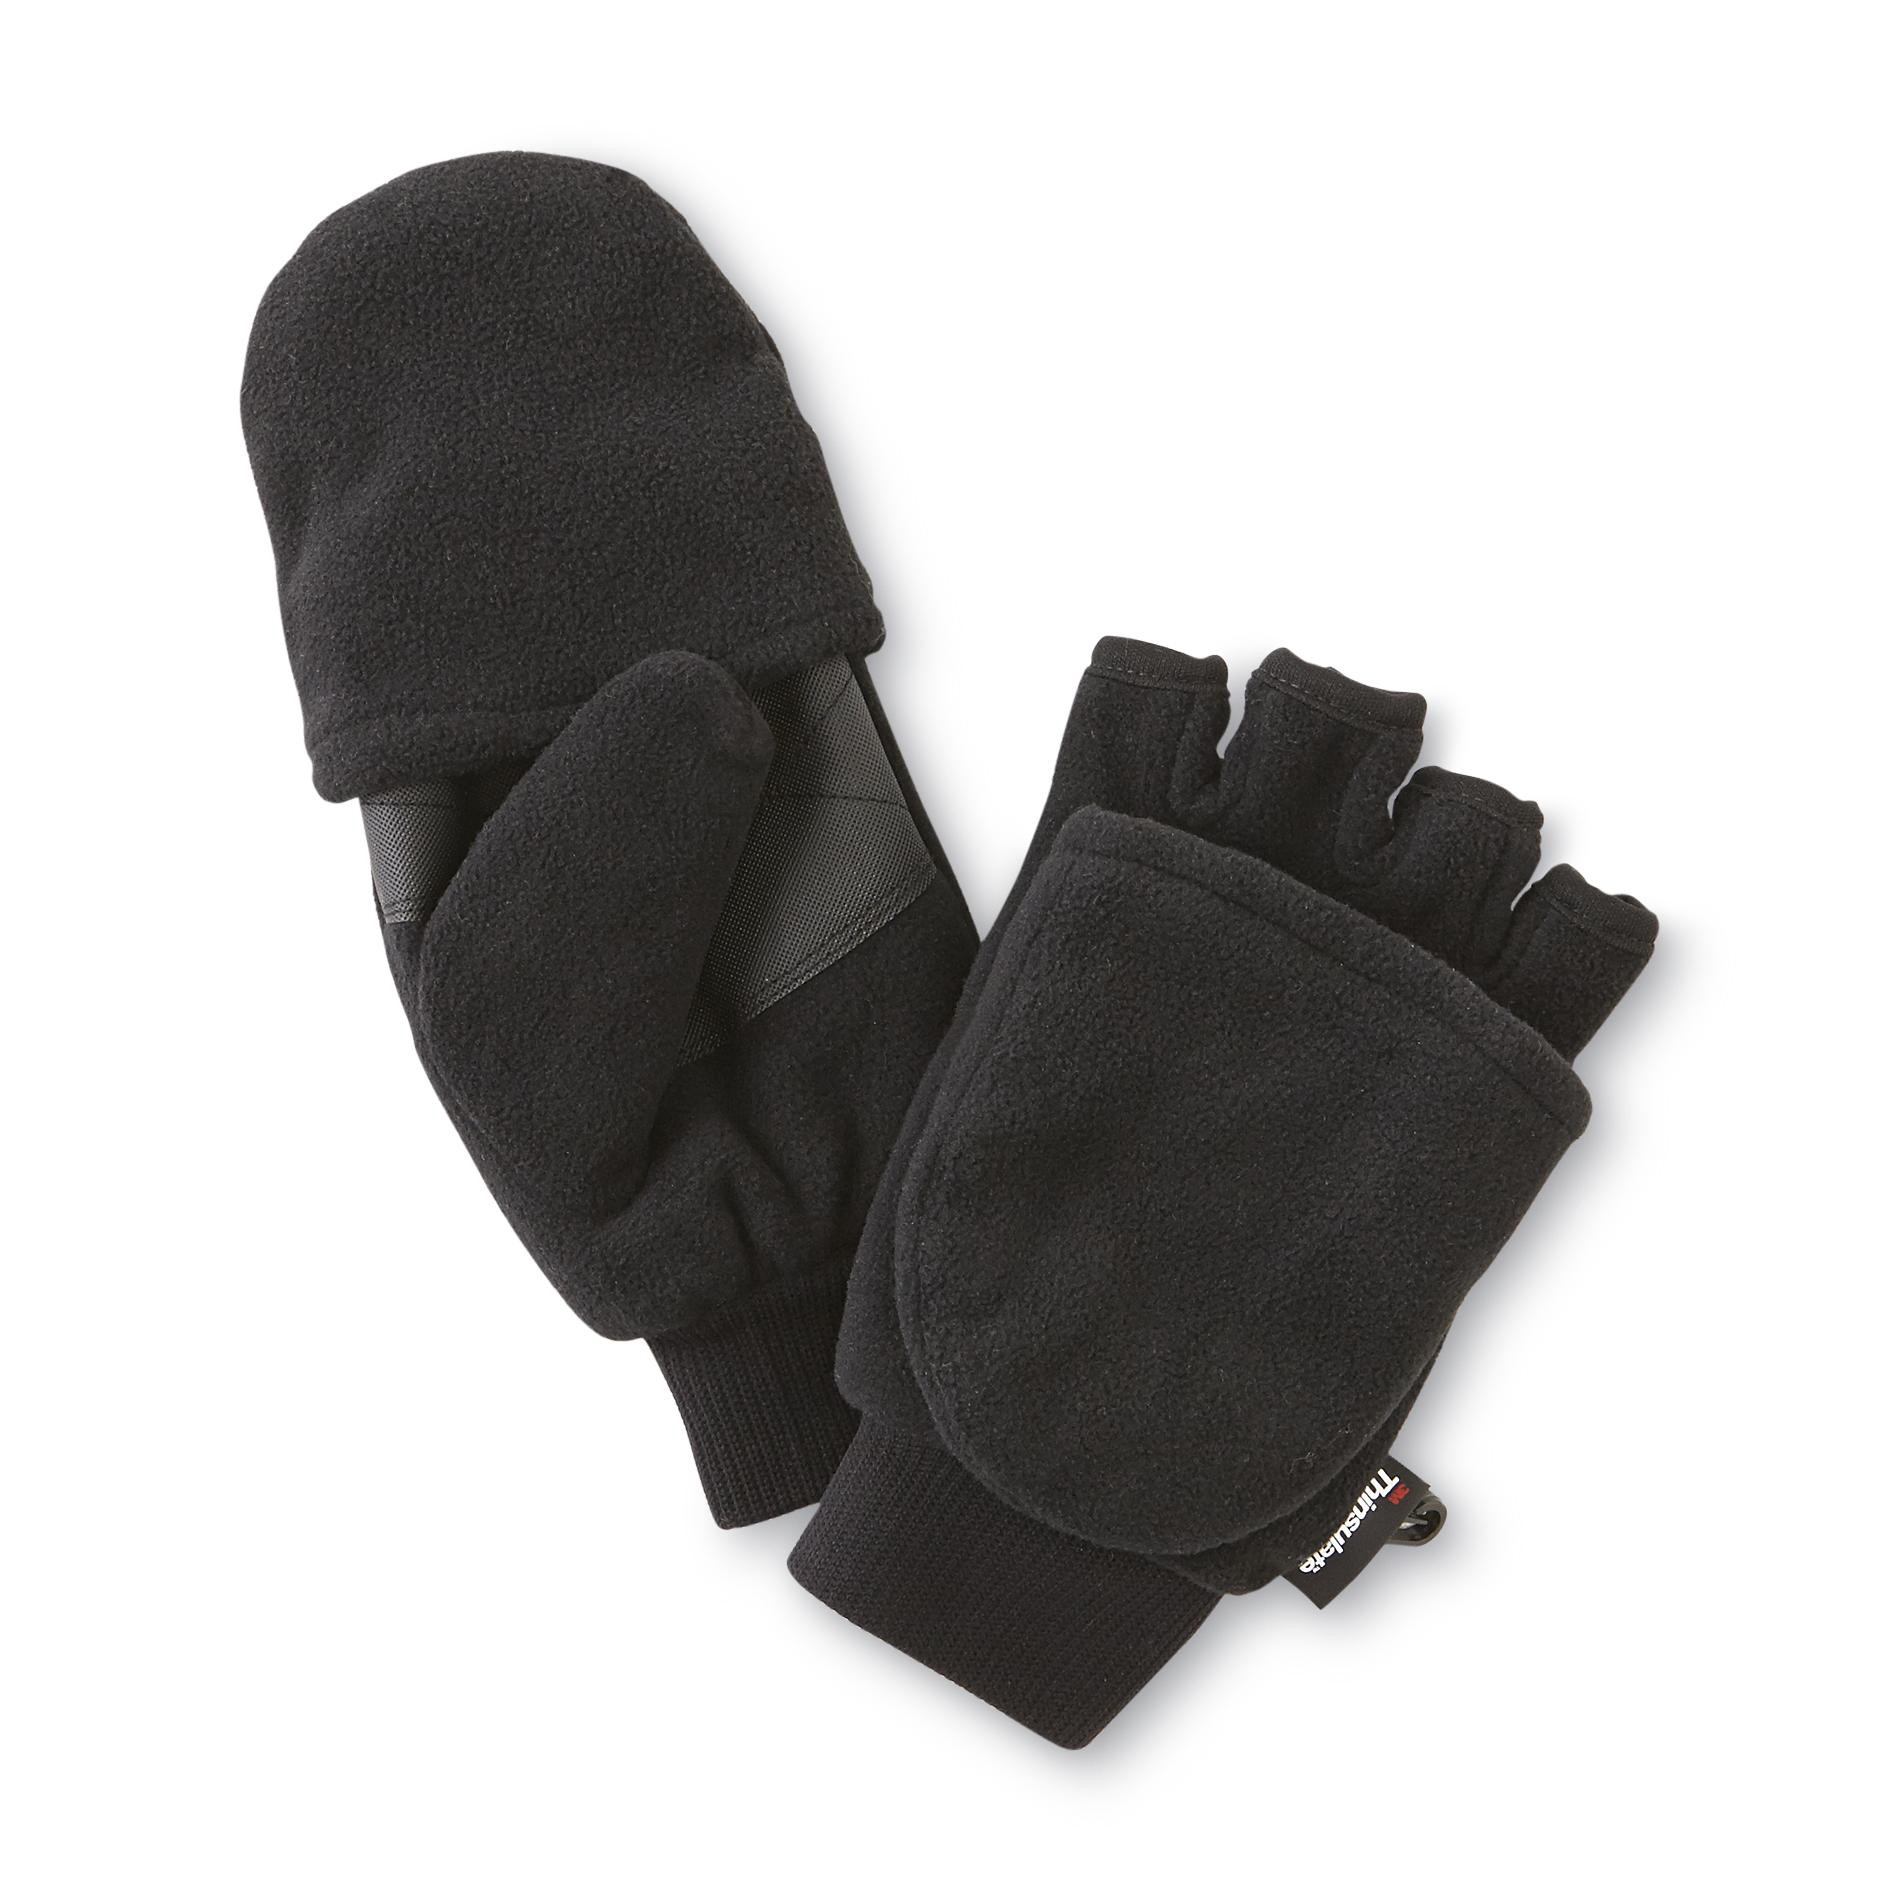 NordicTrack Men's Convertible Fleece Gloves